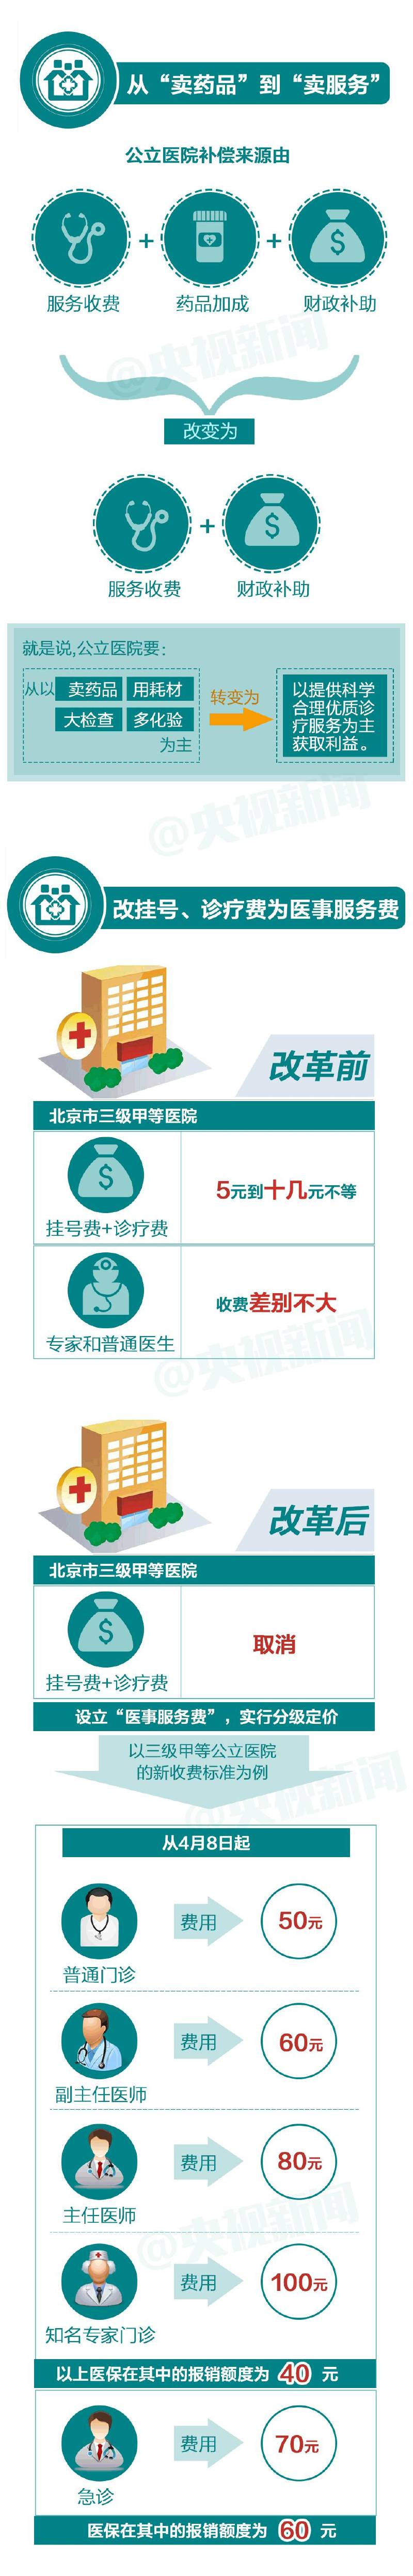 北京燕化医院2017年端午节出诊时间安排